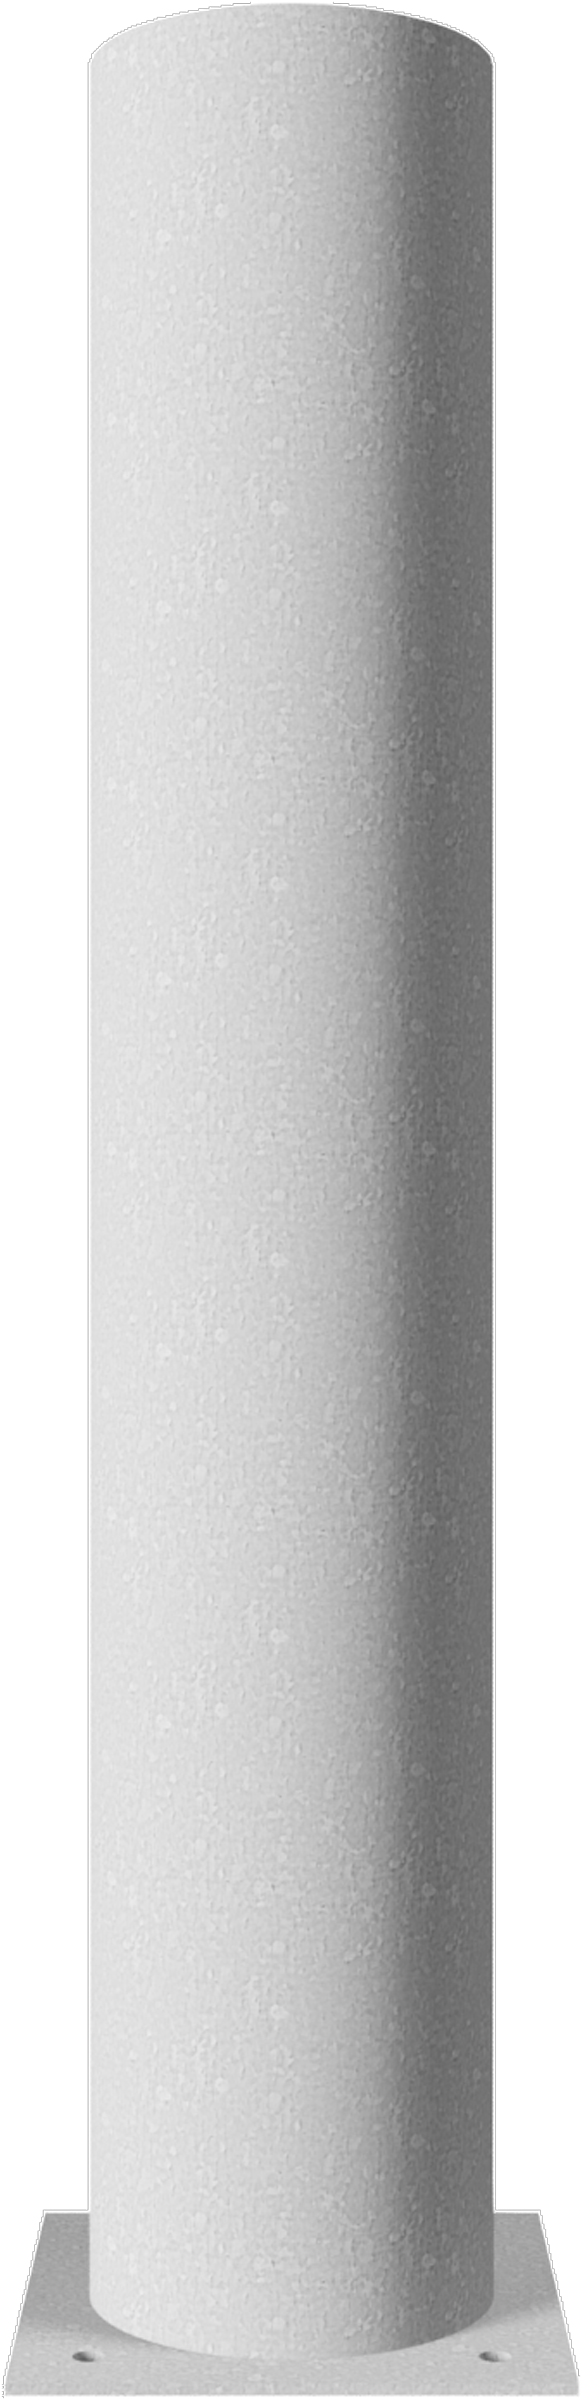 Schake Stahlrohrpoller Ø 273 mm verzinkt